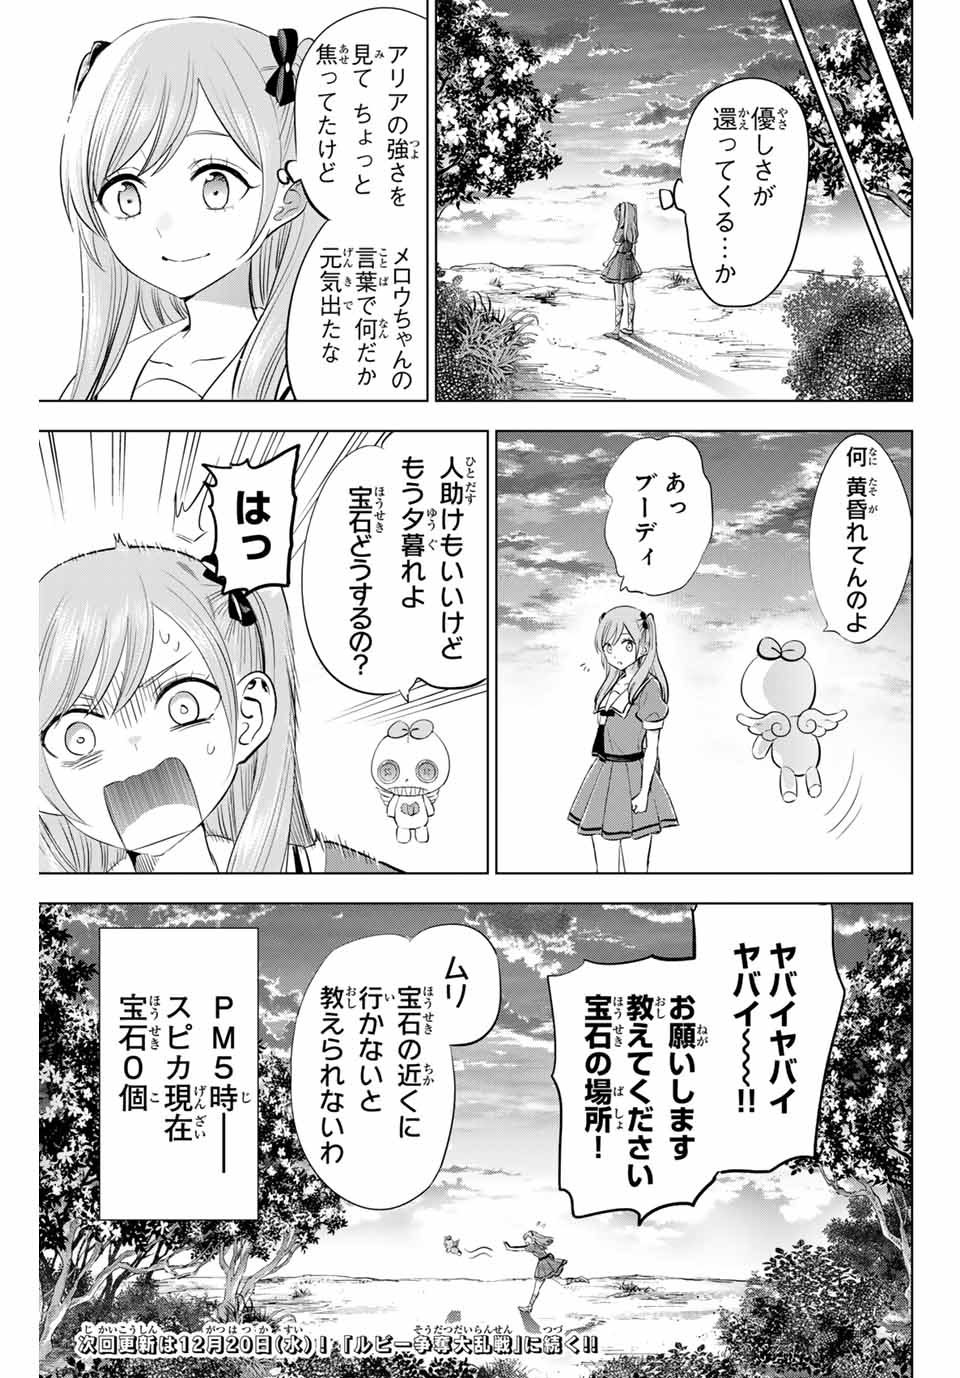 Kuroneko to Majo no Kyoushitsu - Chapter 48 - Page 23